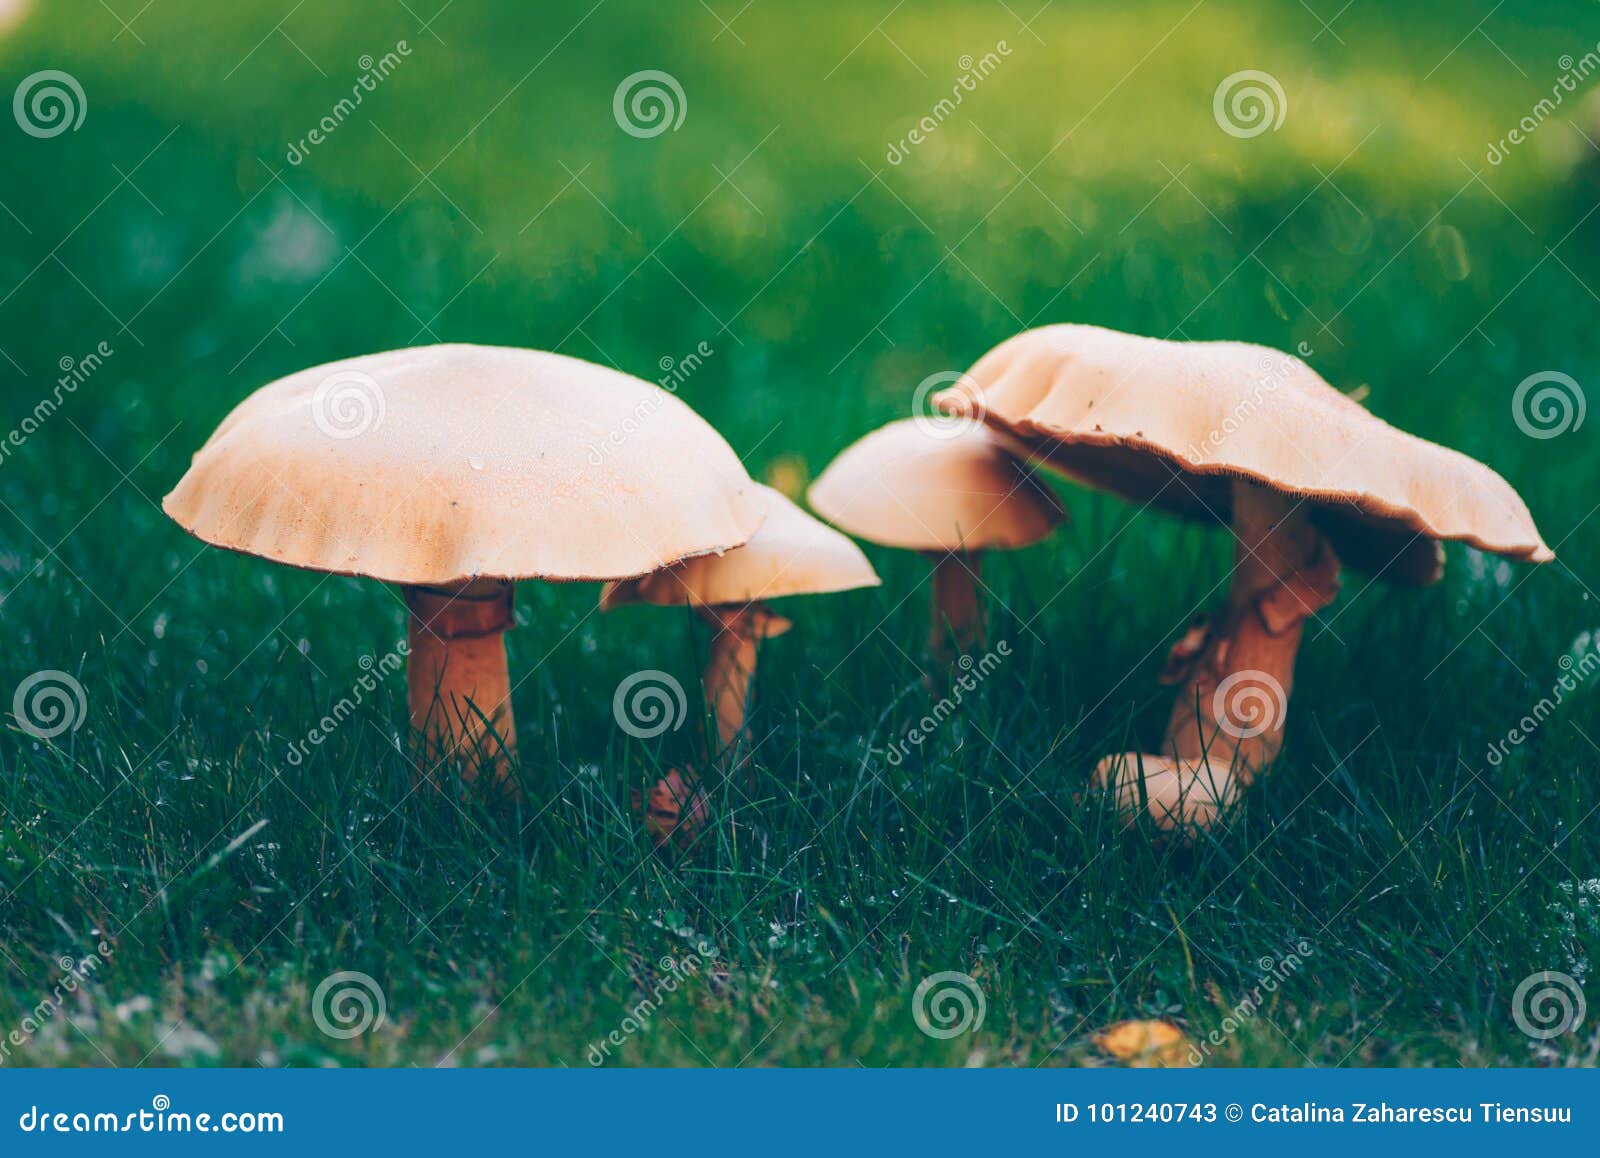 golden bootleg mushroom group